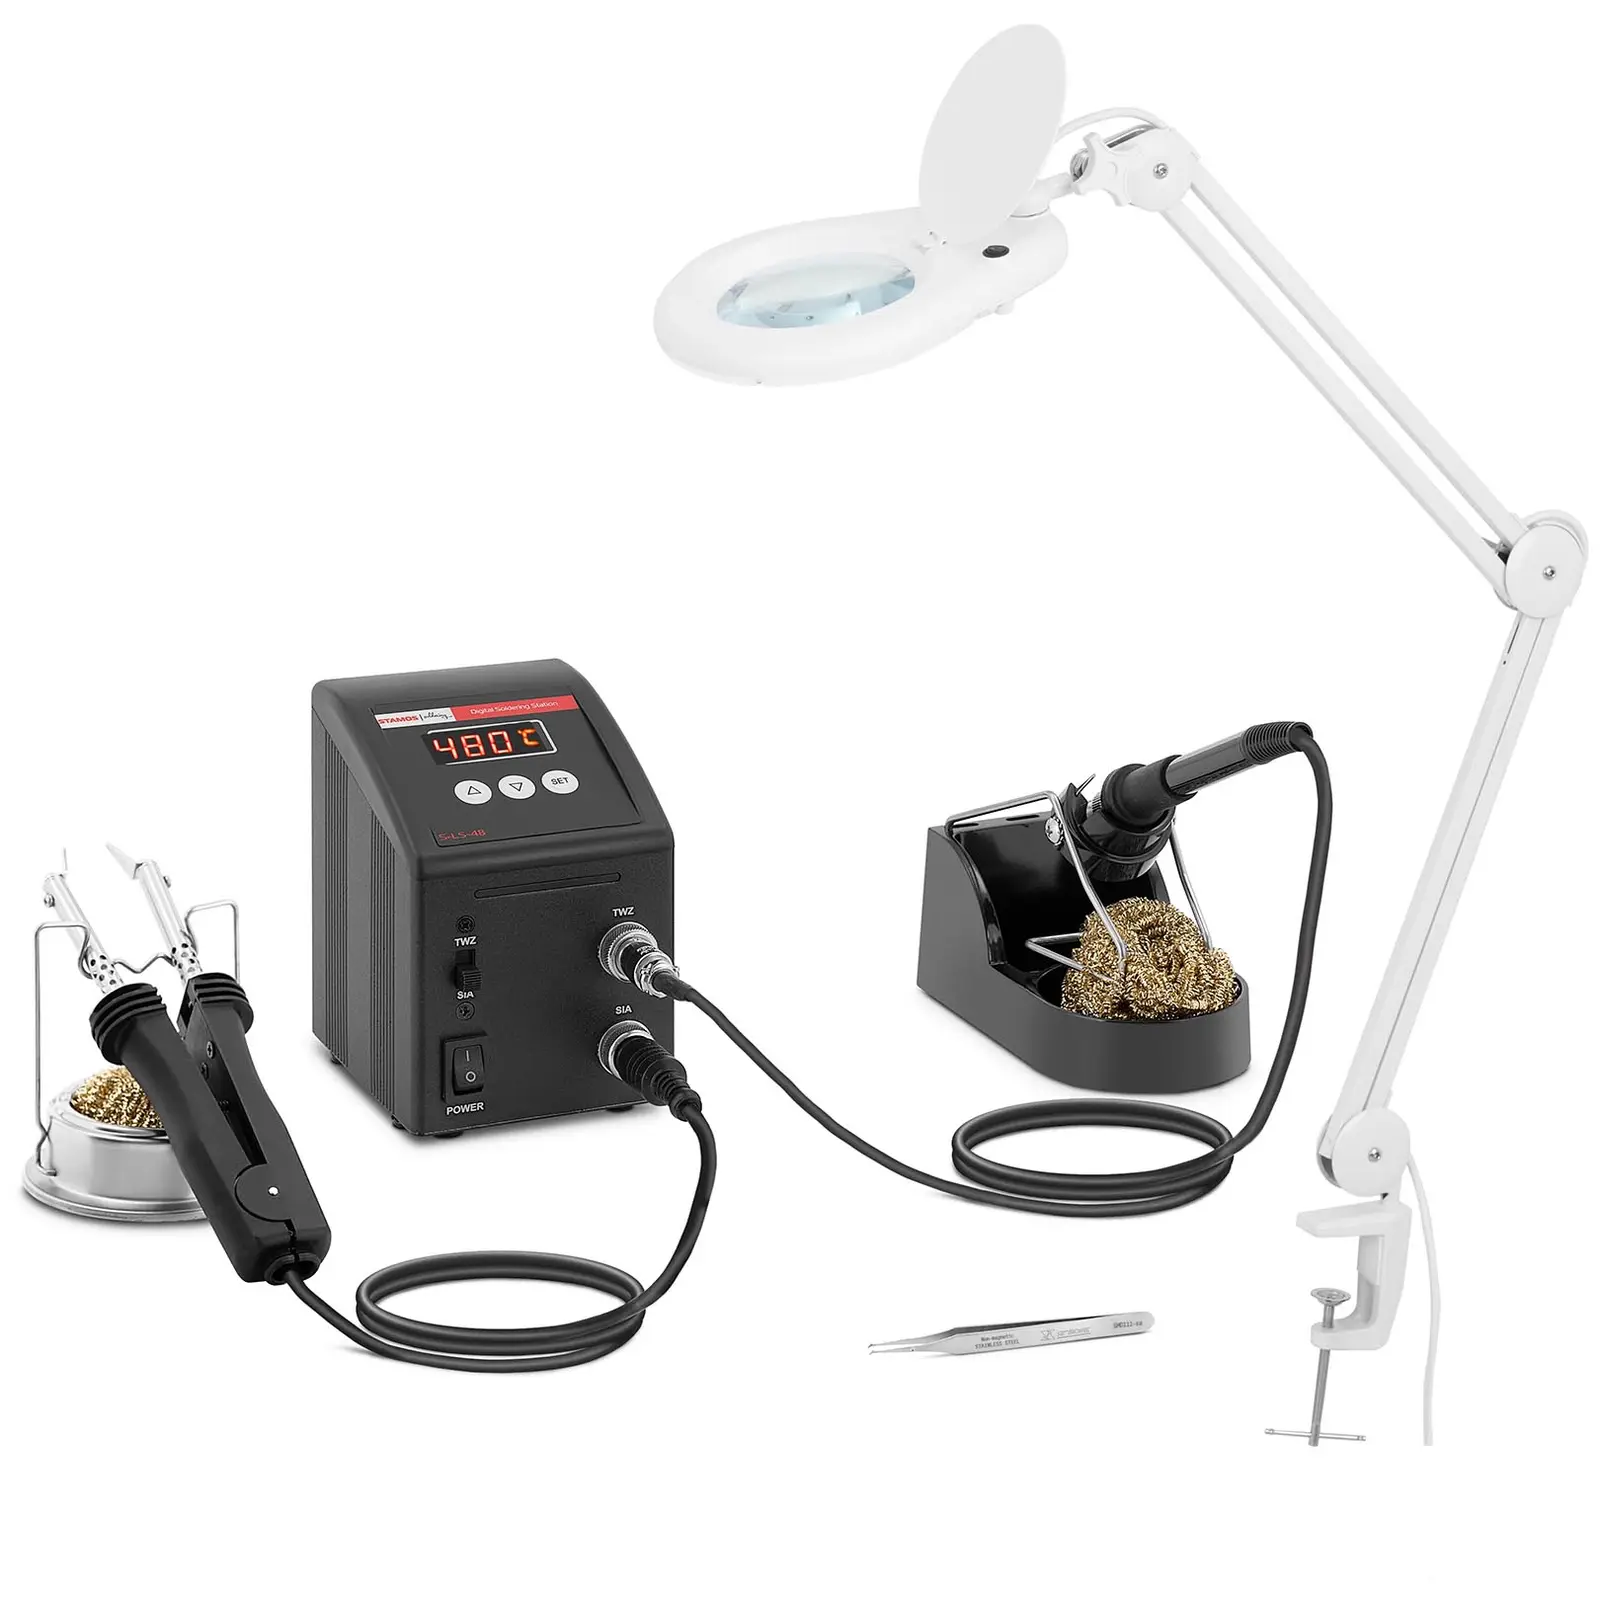 Pájecí stanice a lampa s lupou sada SMD digitální 80 W LED - Stamos Soldering